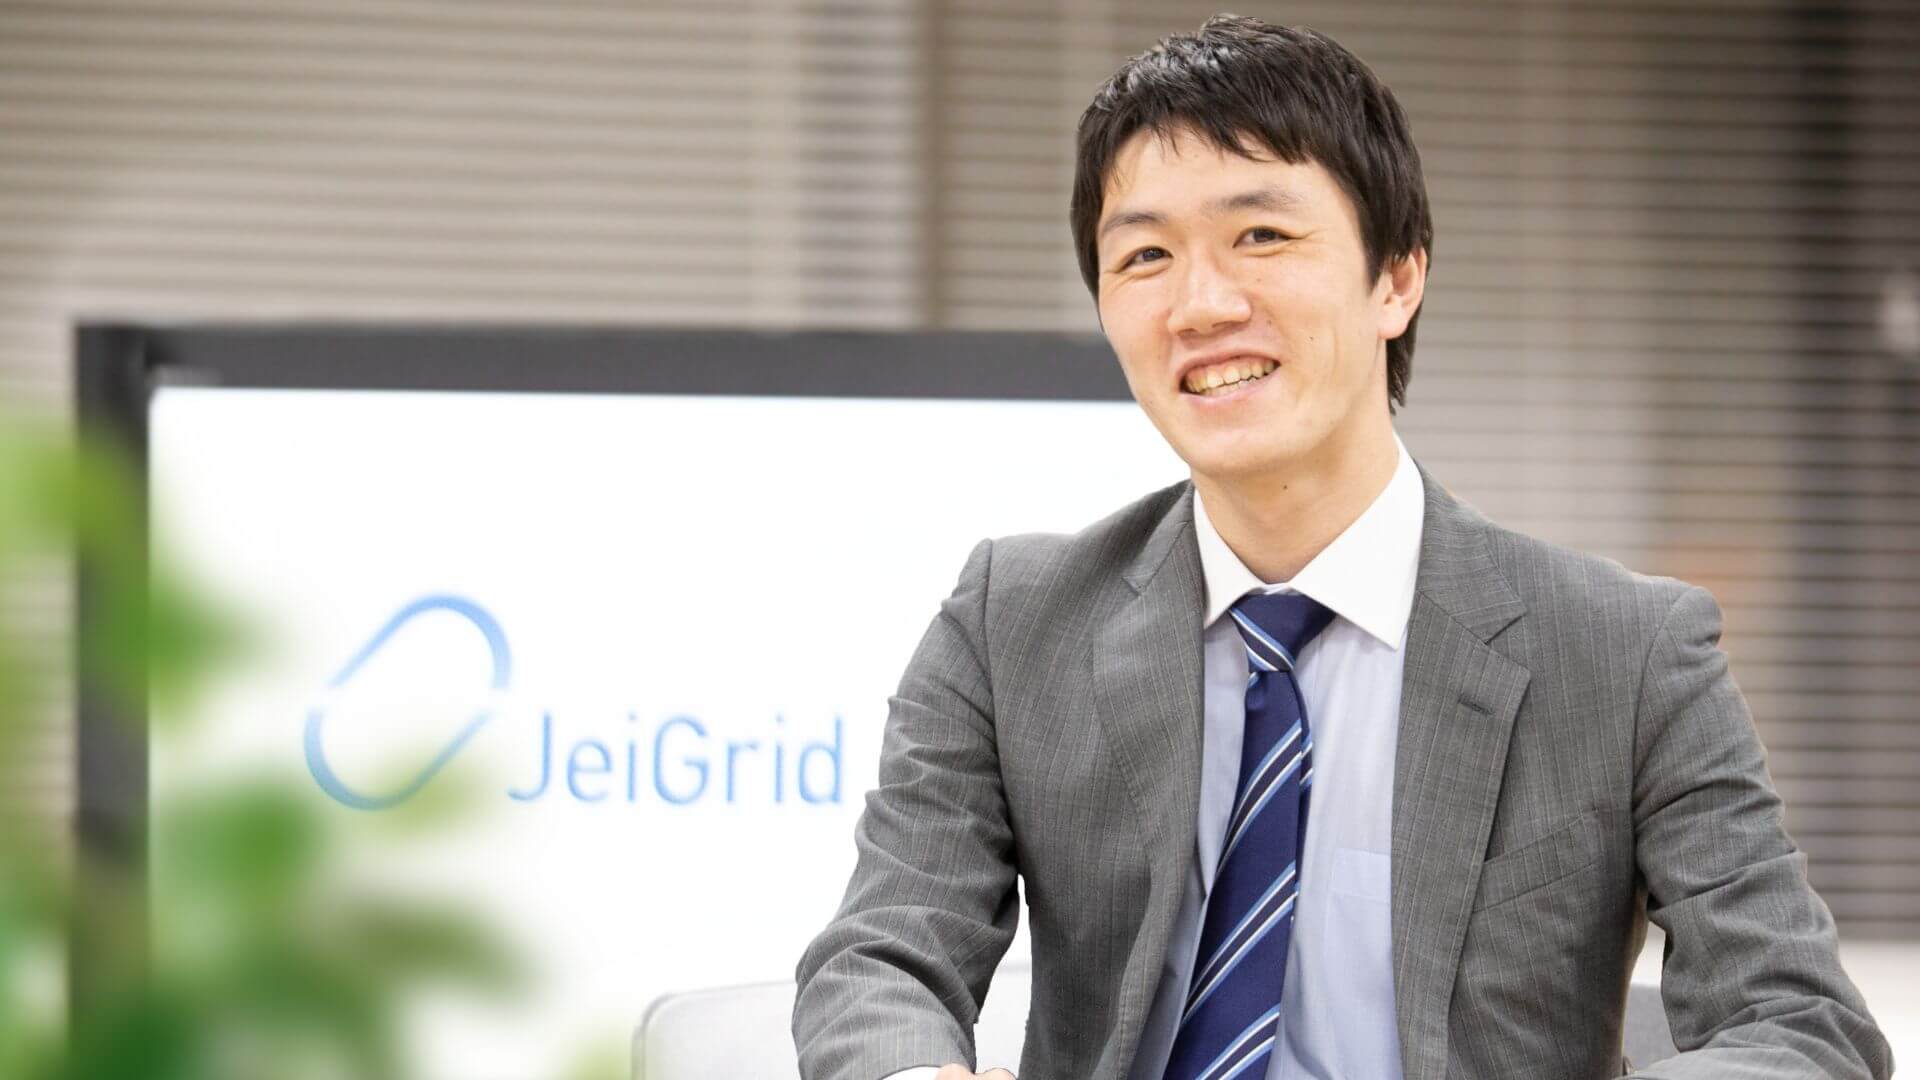 JeiGrid株式会社　代表取締役社長　長野広樹様